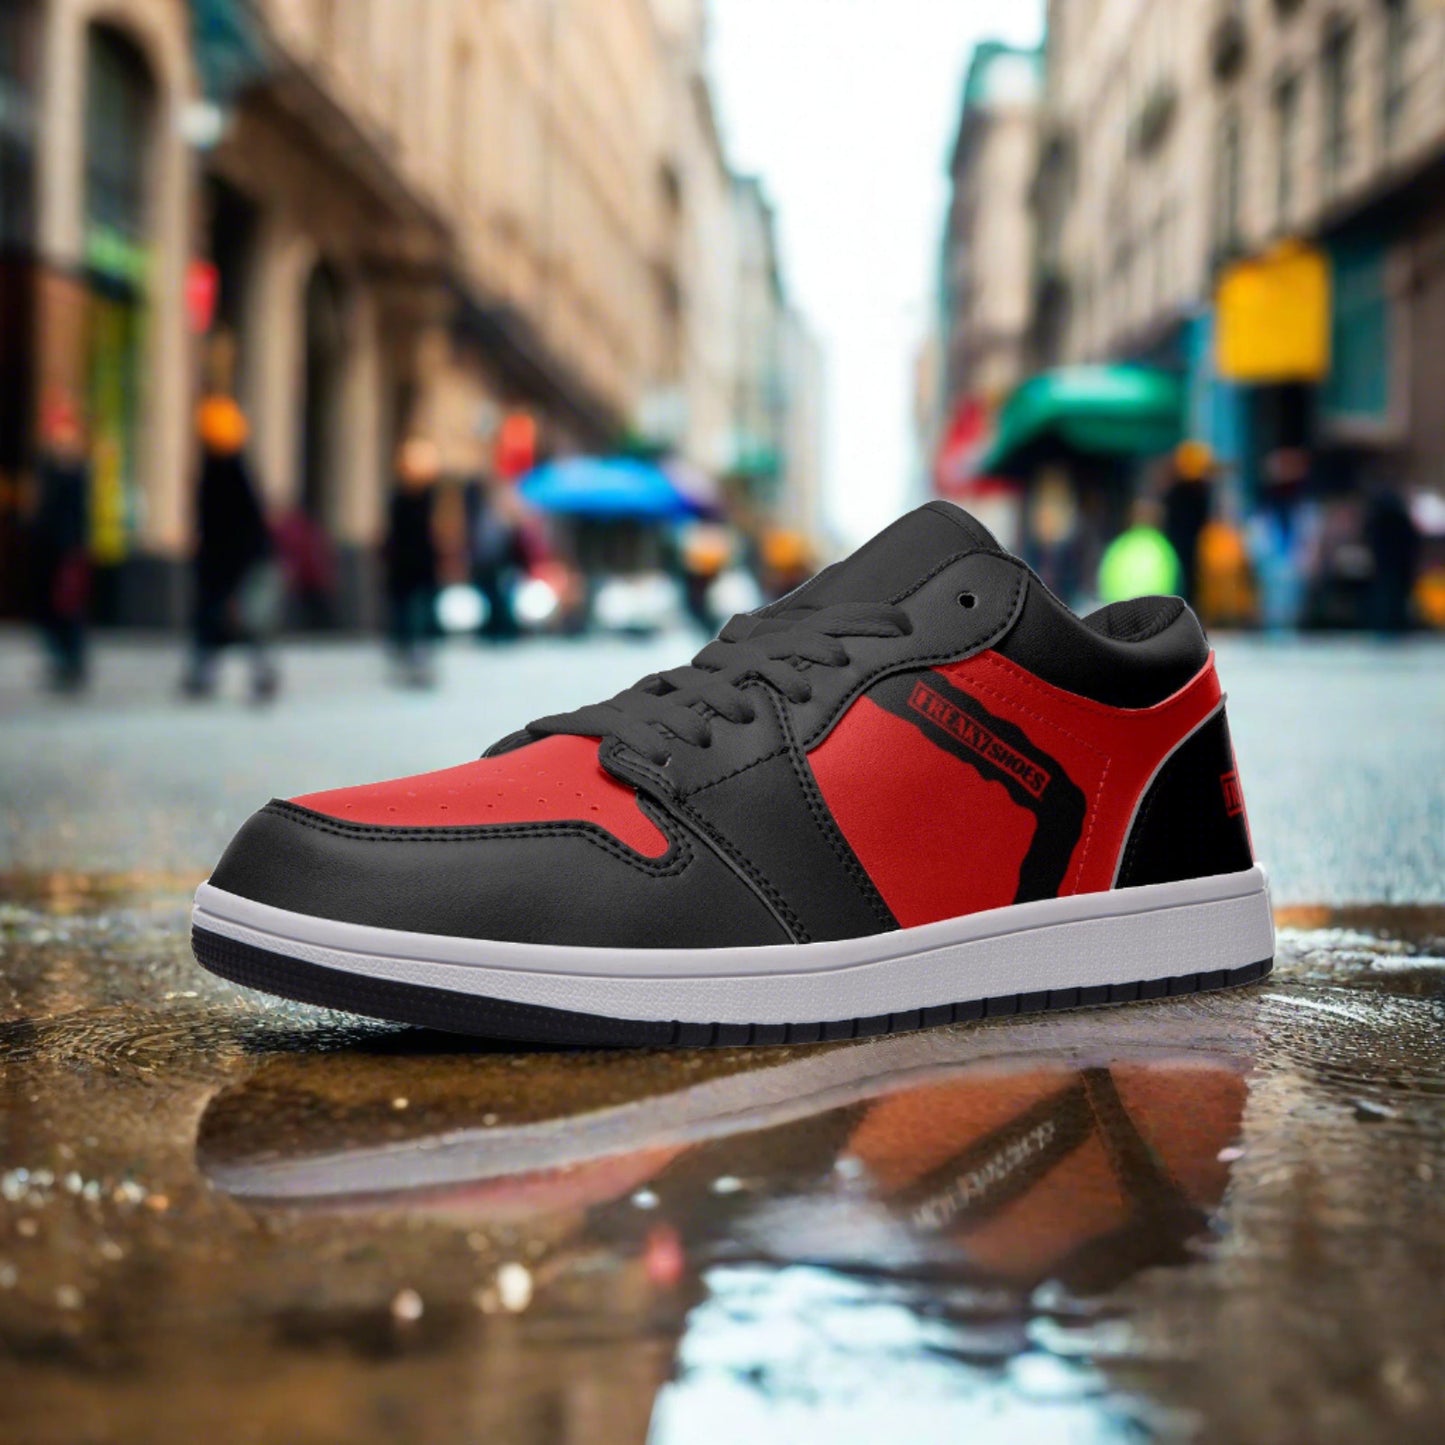 Freaky Shoes® Zapatillas bajas unisex de cuero en rojo y negro